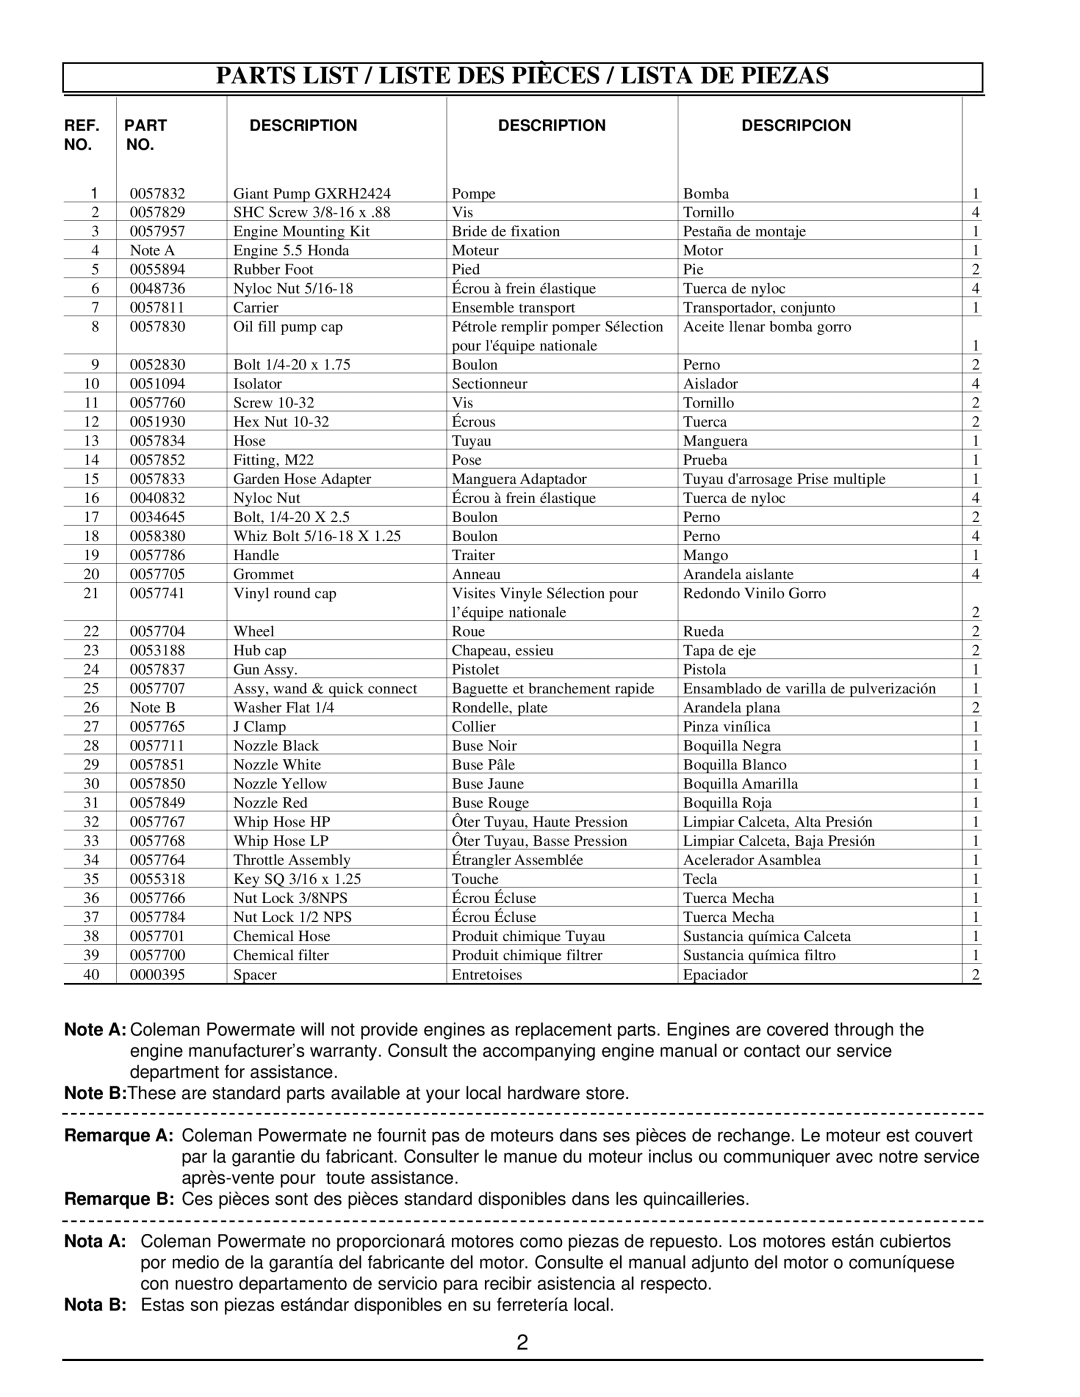 Coleman PW0912500 service manual Parts List / Liste Des Pièces / Lista De Piezas, Description, Descripcion 